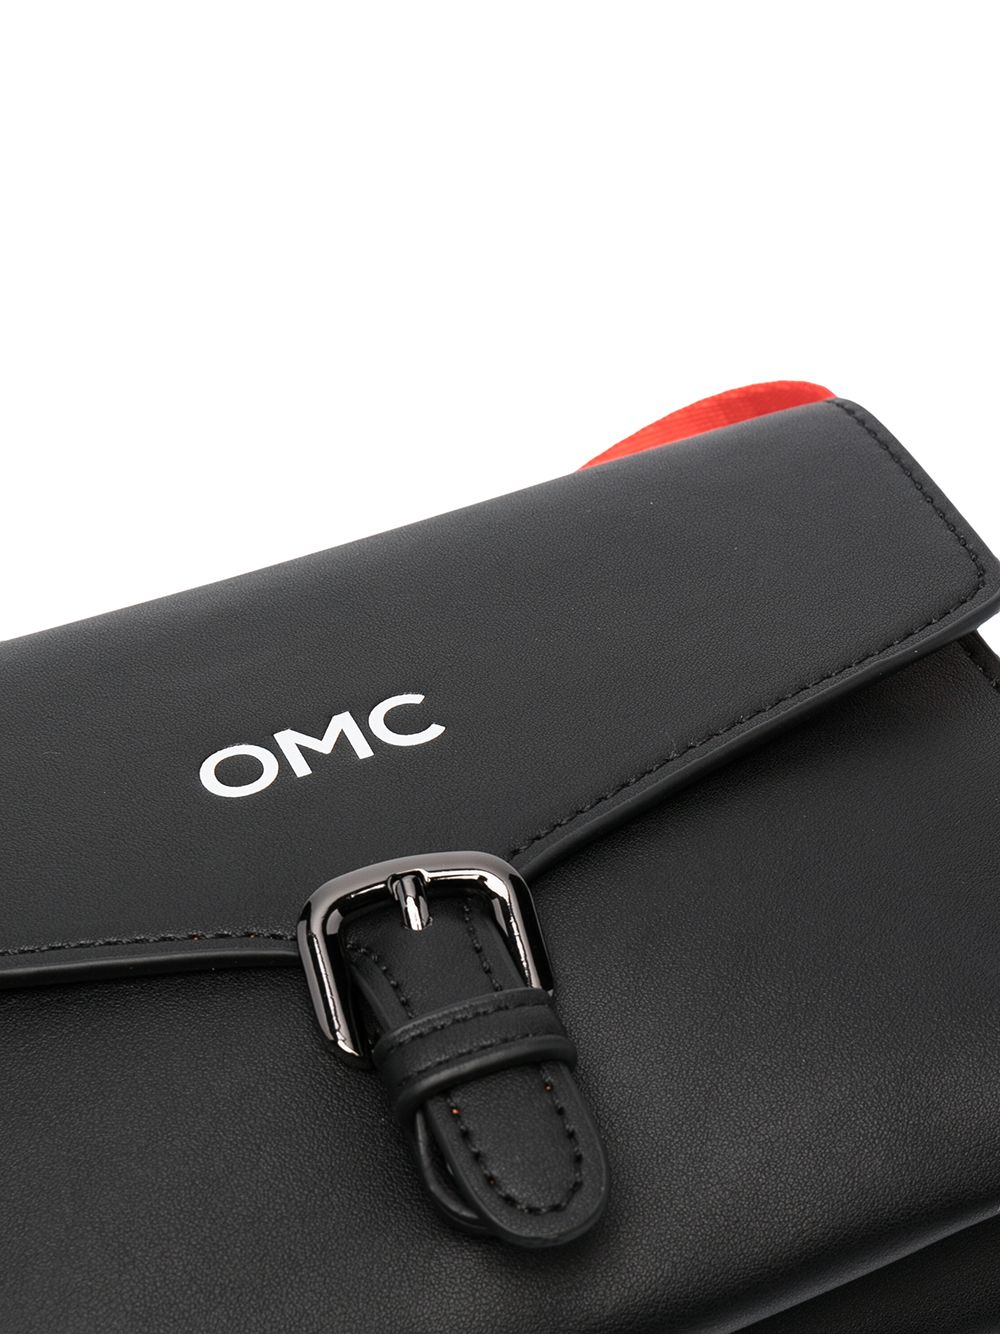 фото Omc сумка с откидным клапаном и логотипом